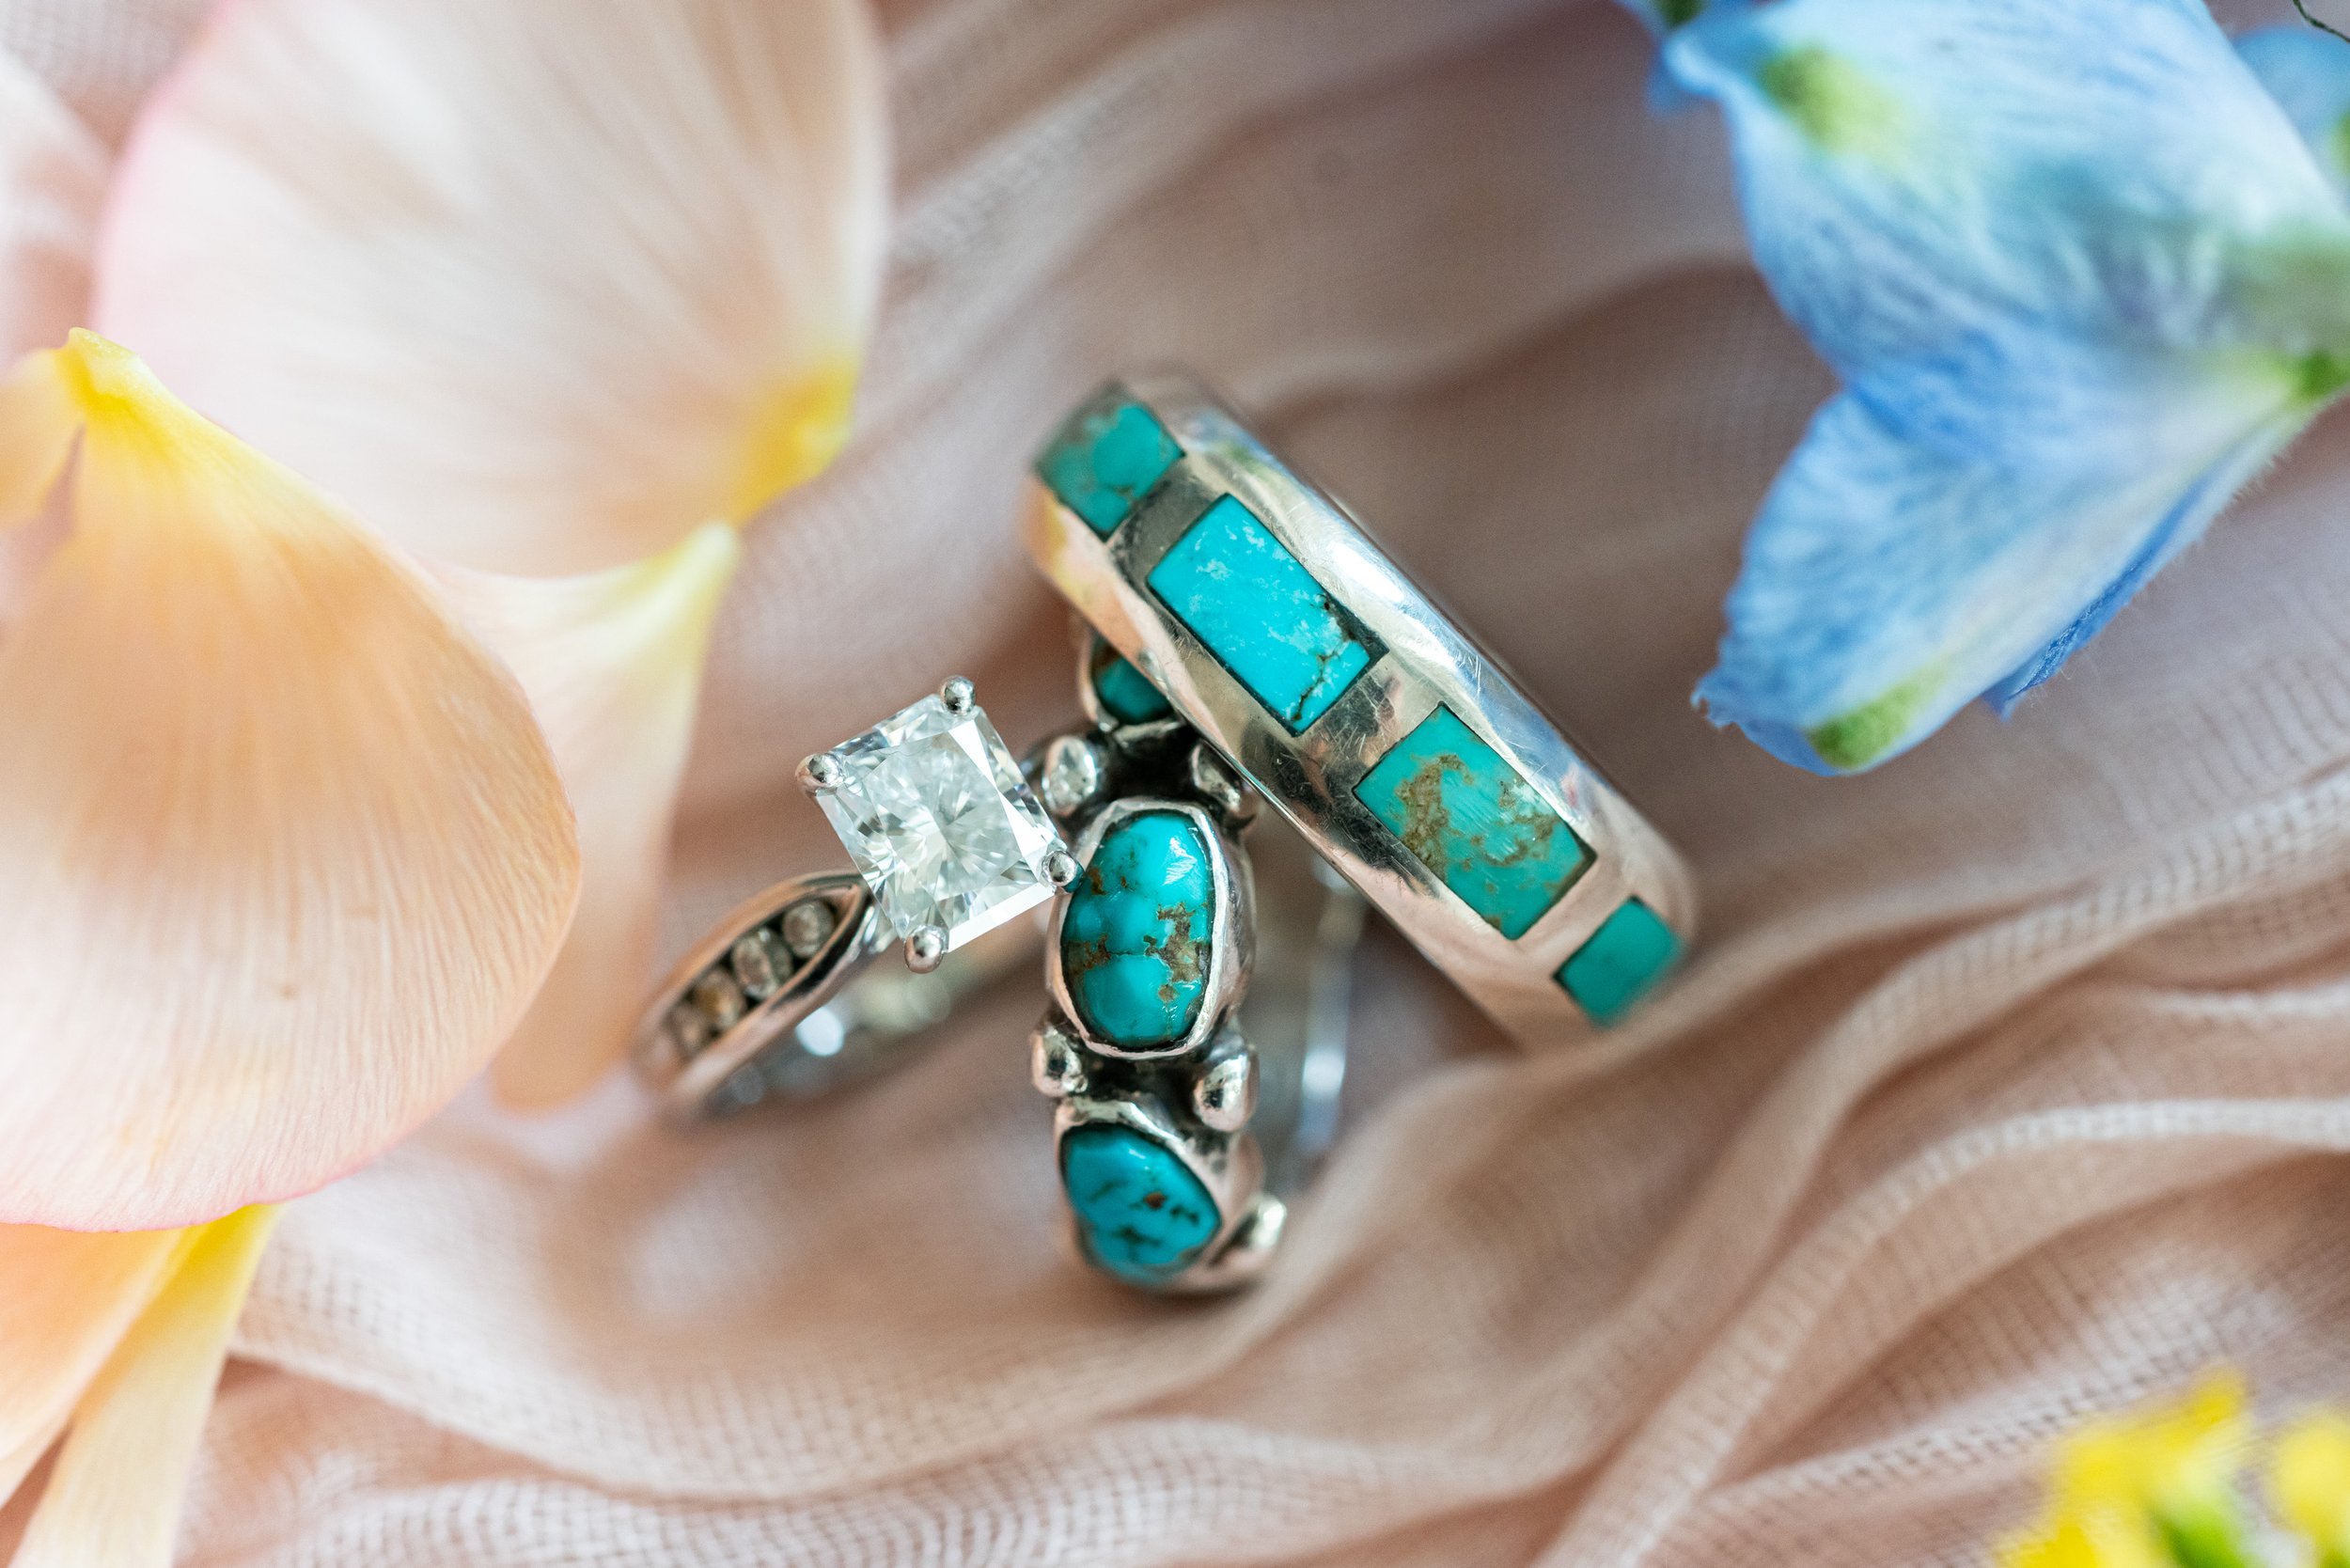 Amazing custom Arizona New Mexico Southwest turquoise wedding ring bands set